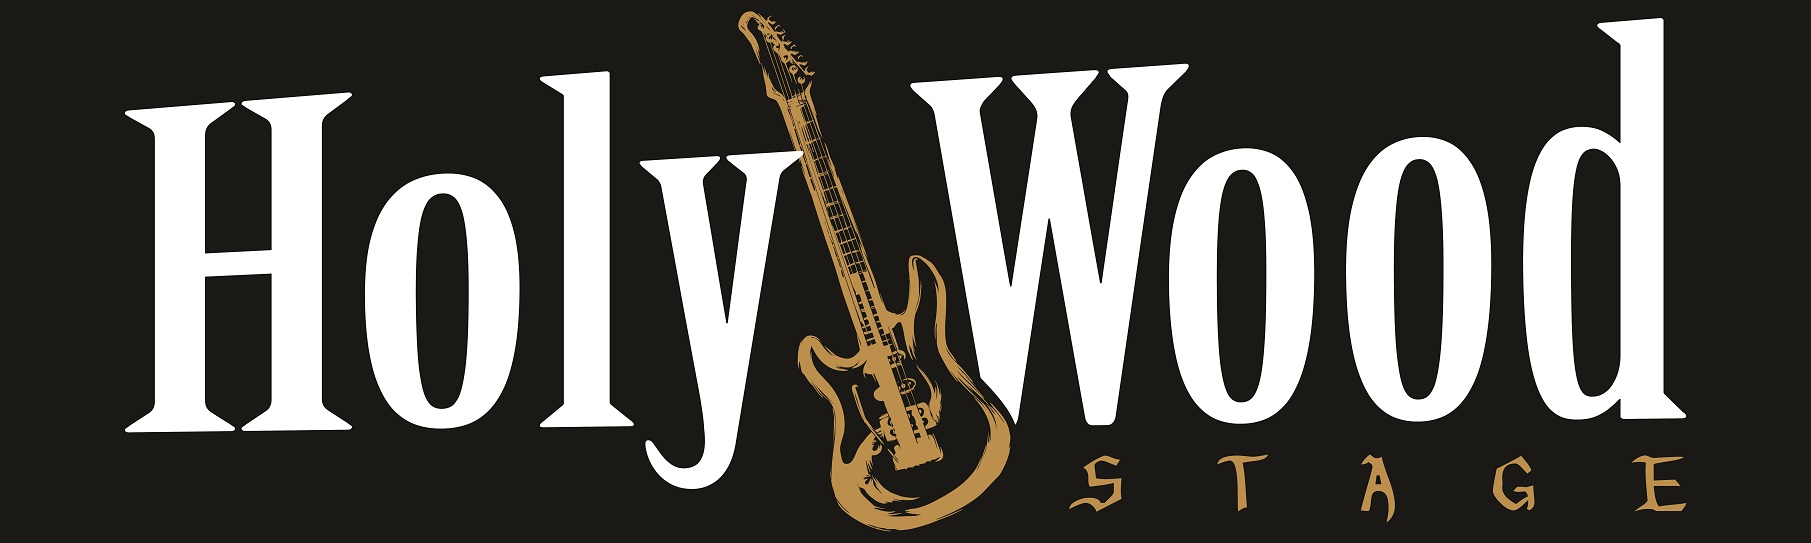 holywood logo 2014